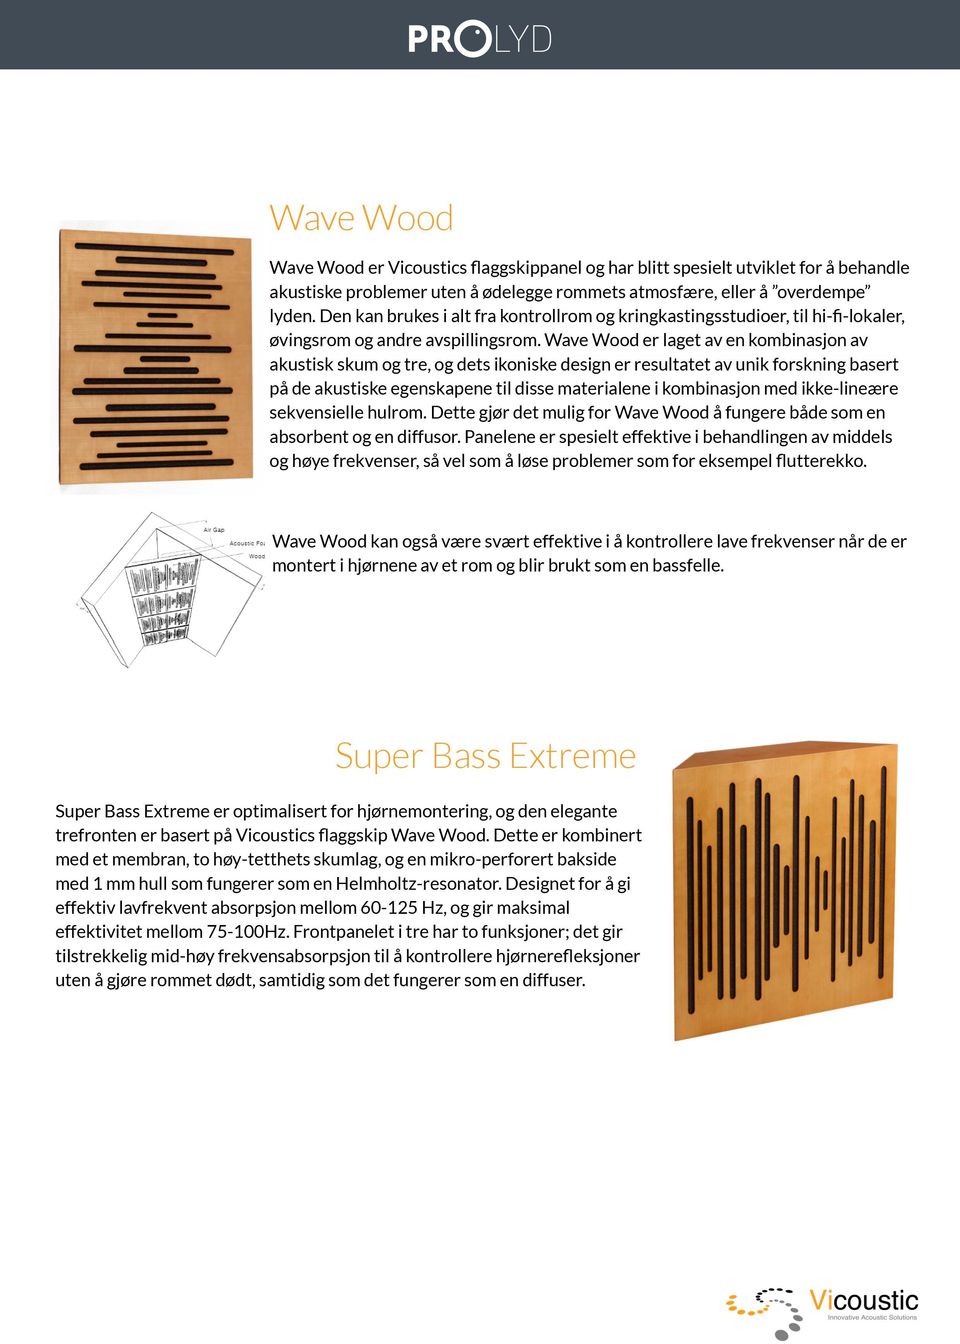 Wave Wood er laget av en kombinasjon av akustisk skum og tre, og dets ikoniske design er resultatet av unik forskning basert på de akustiske egenskapene til disse materialene i kombinasjon med